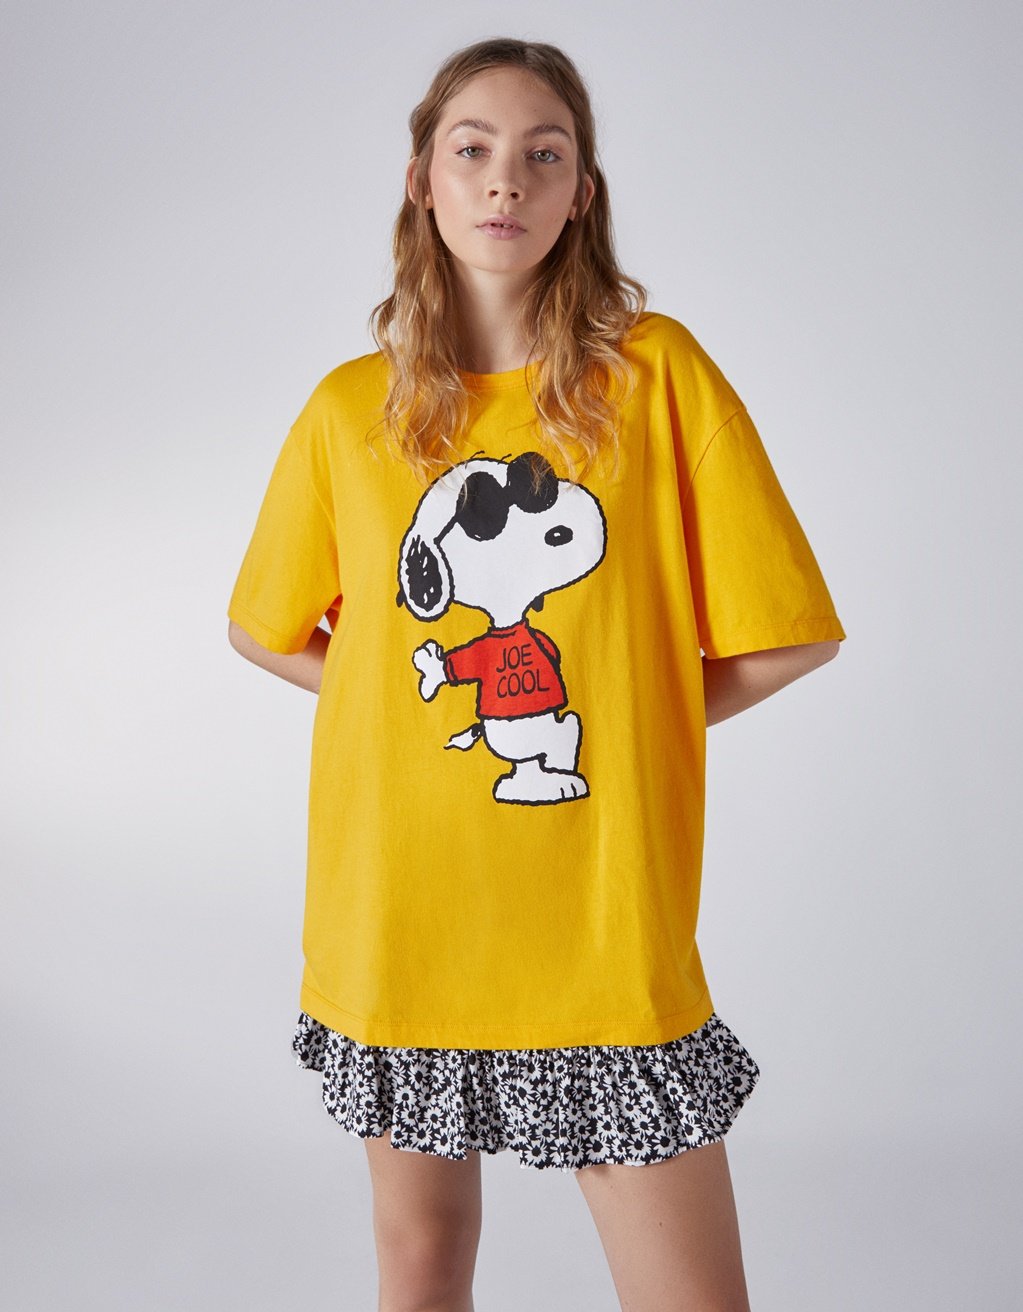 Conoce la colección de ropa inspirada en Snoopy para este verano